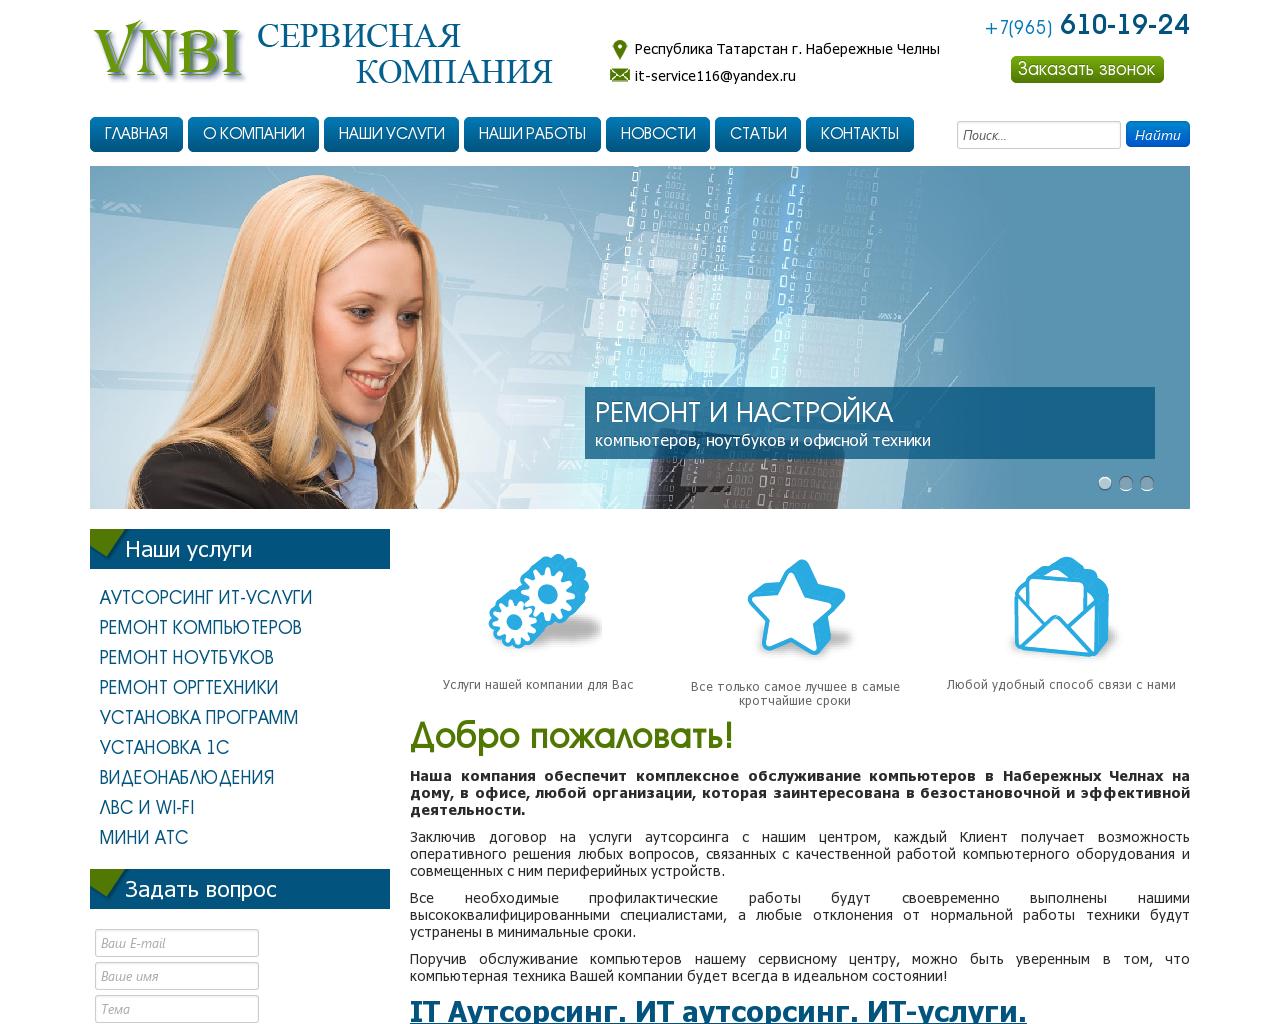 Изображение сайта vnbi.ru в разрешении 1280x1024